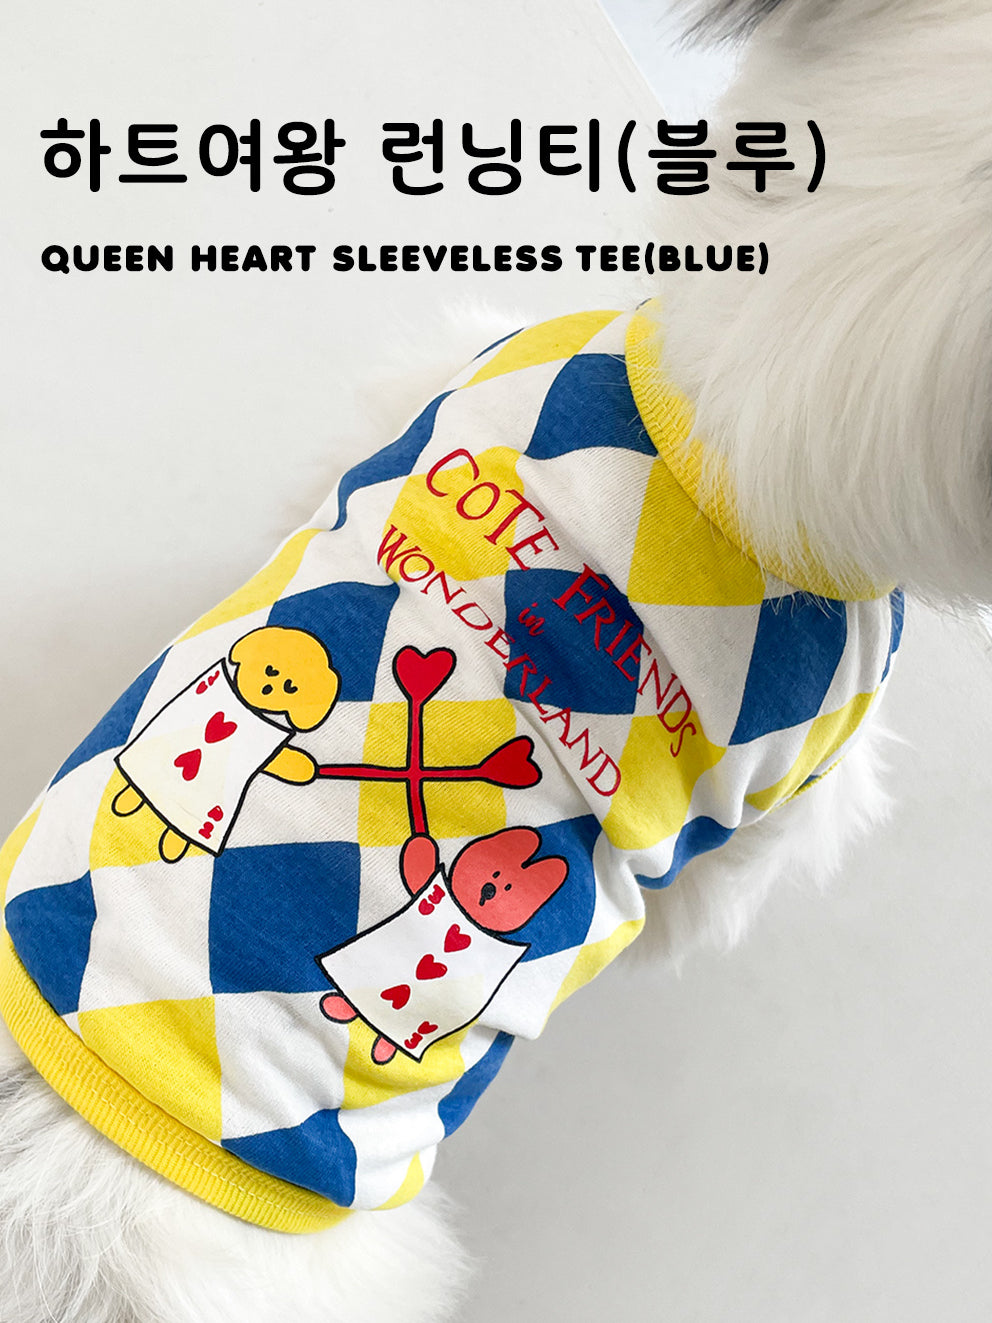 Queen Heart Sleeveless Tee